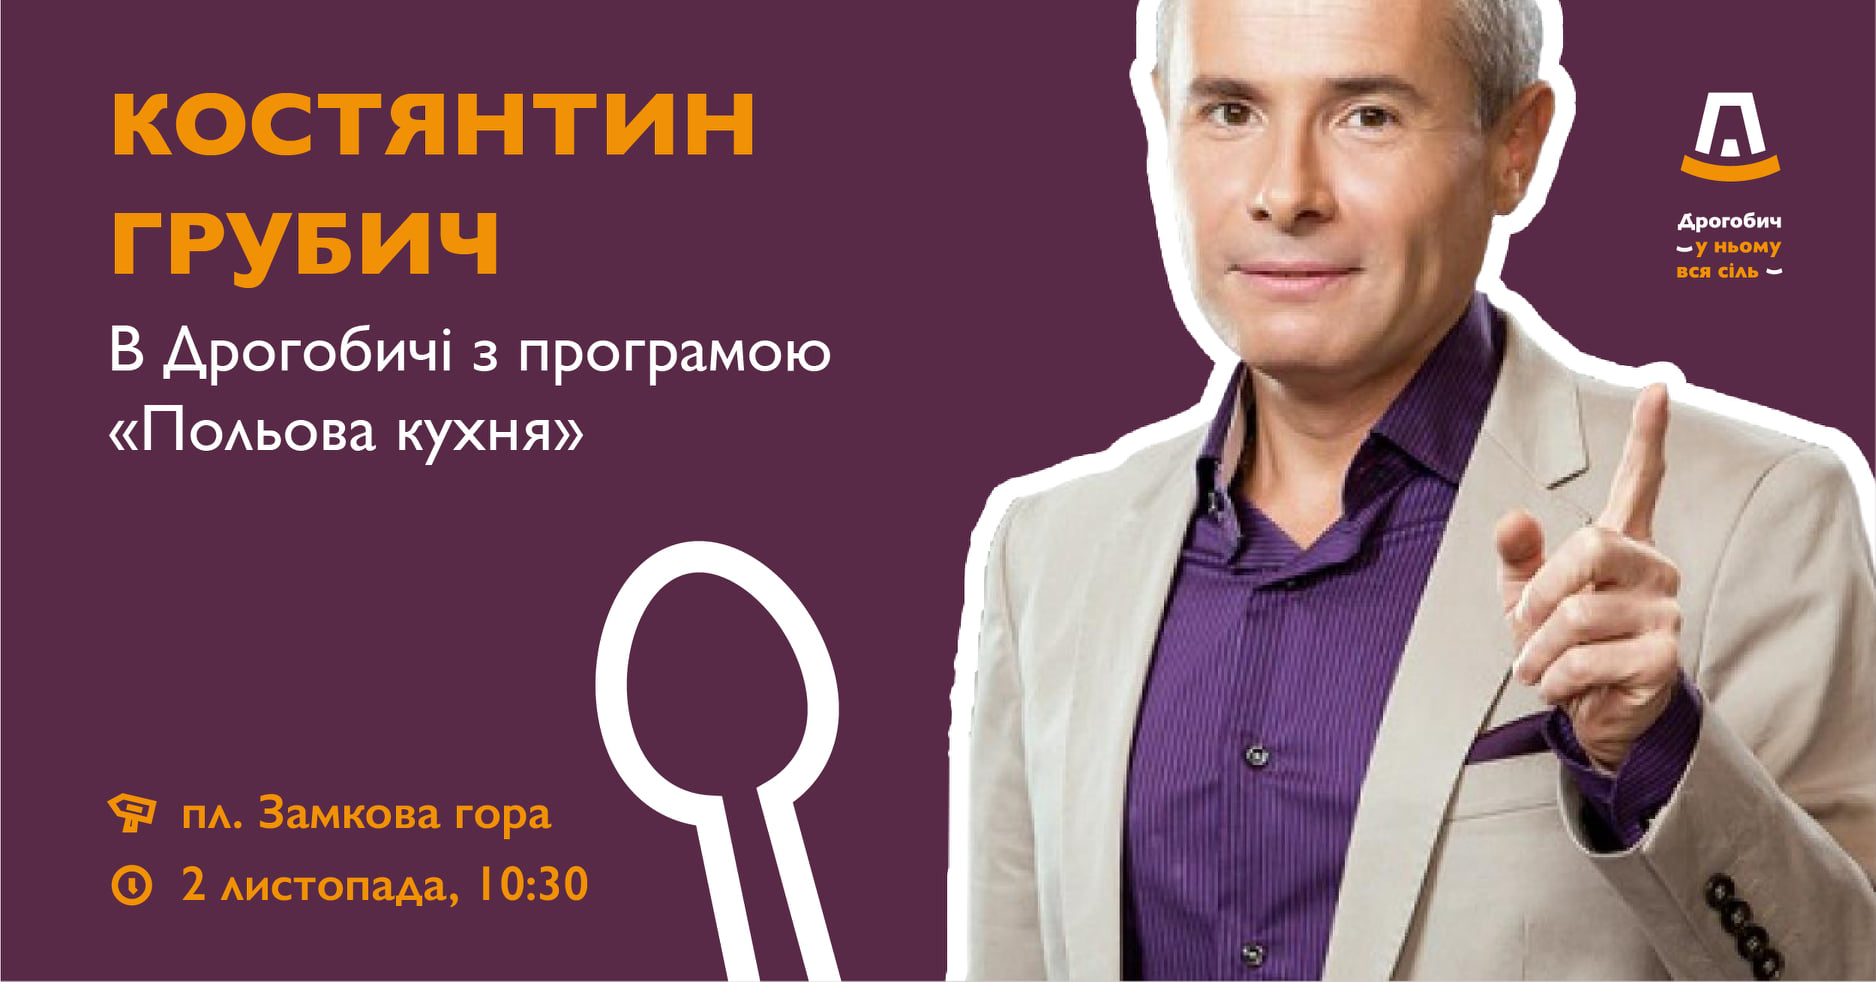 Констянтин Грубич приїде у Дрогобич з програмою «Польова кухня»